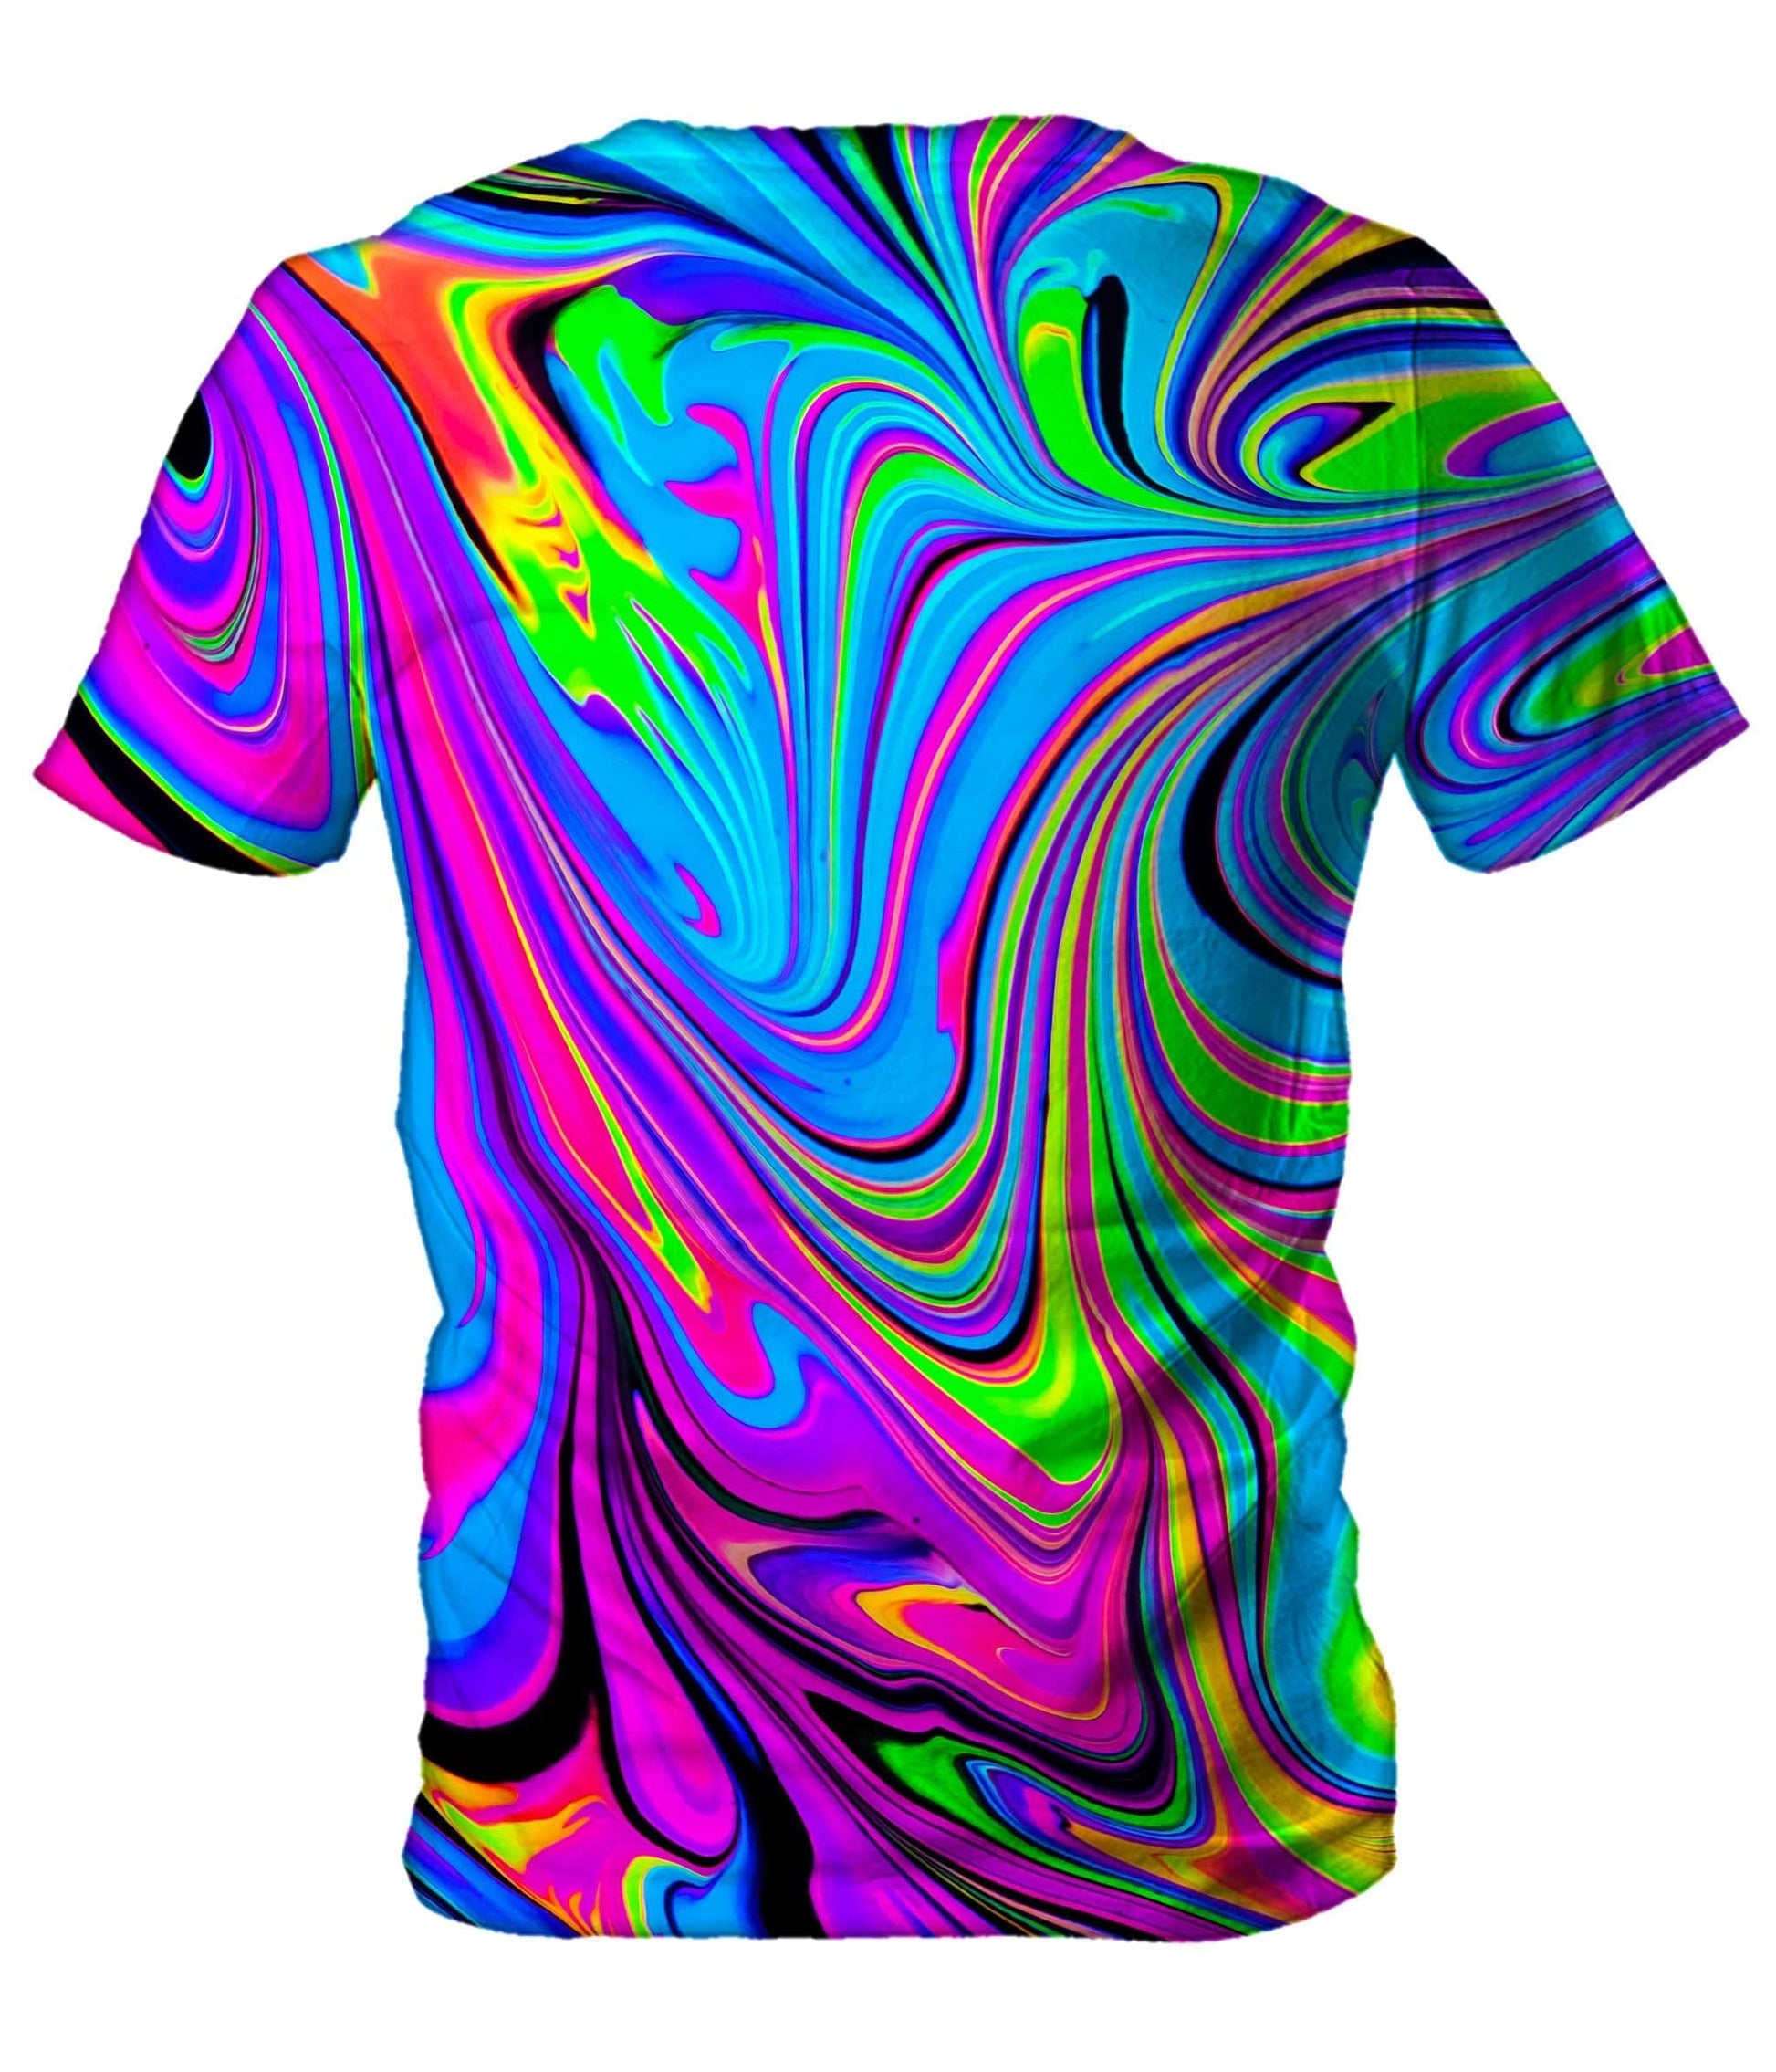 Cosmic Flow Men's T-Shirt, Psychedelic Pourhouse, | iEDM